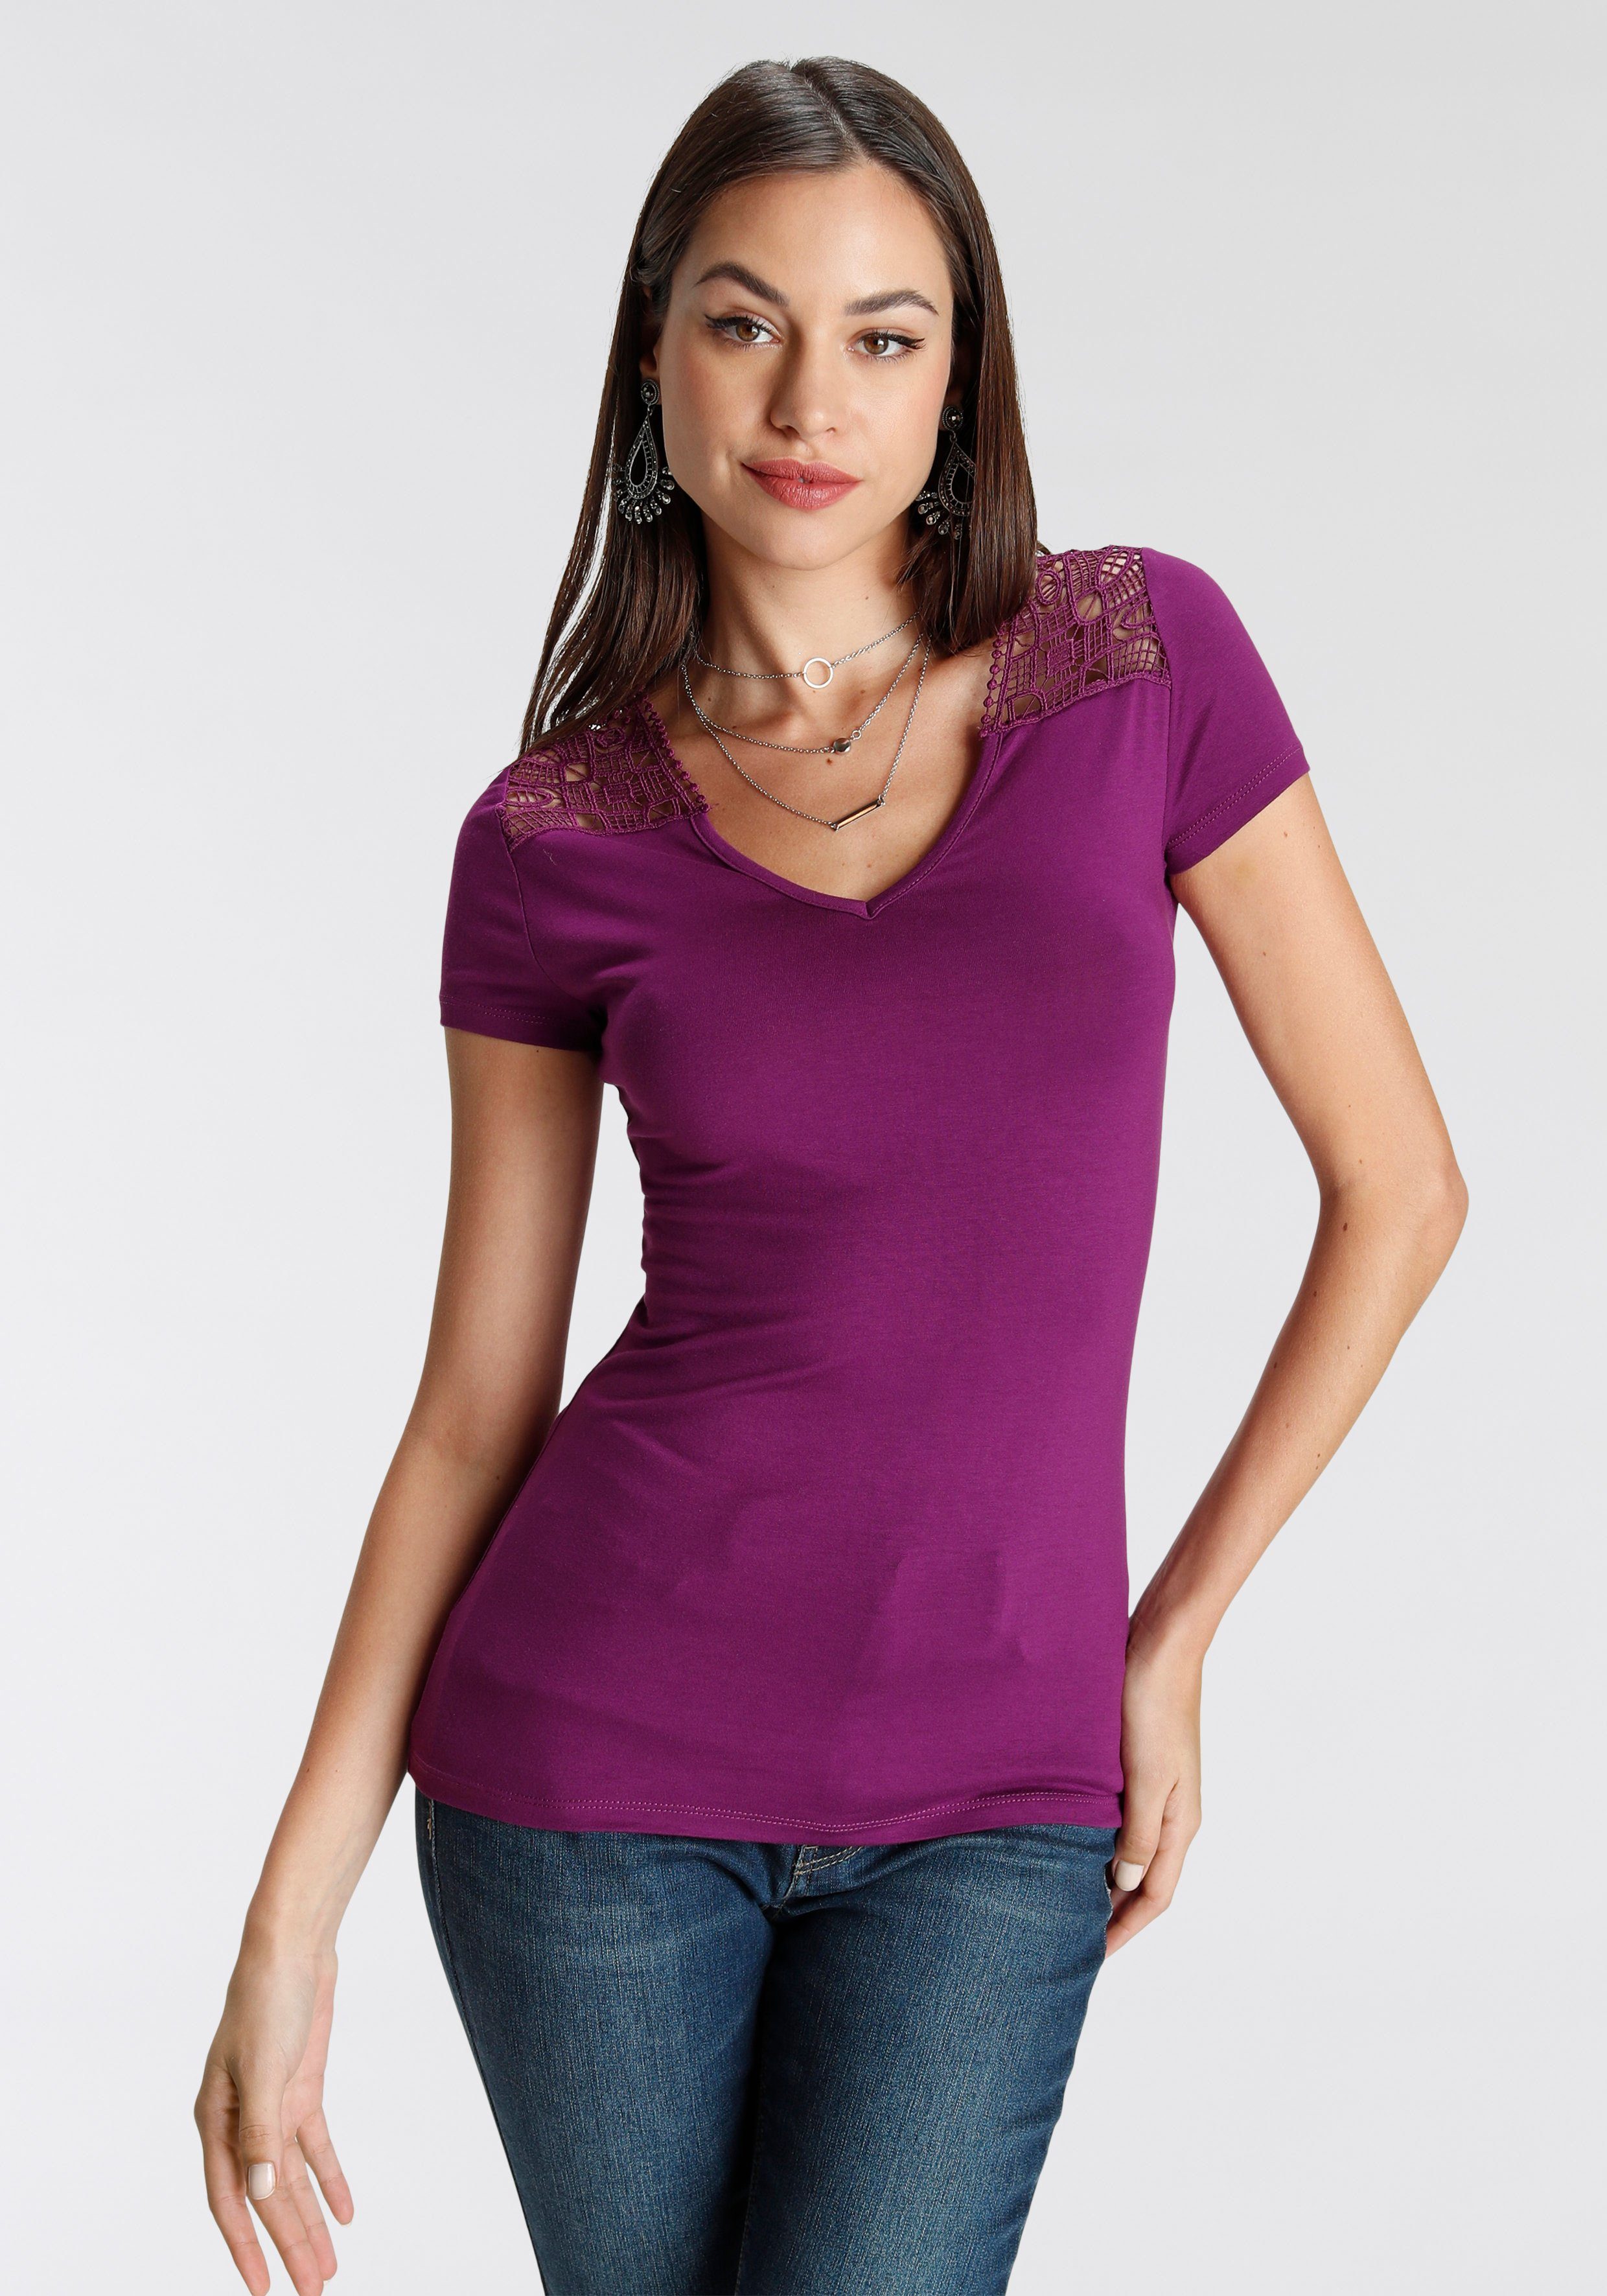 mit Melrose T-Shirt V-Ausschnitt lila